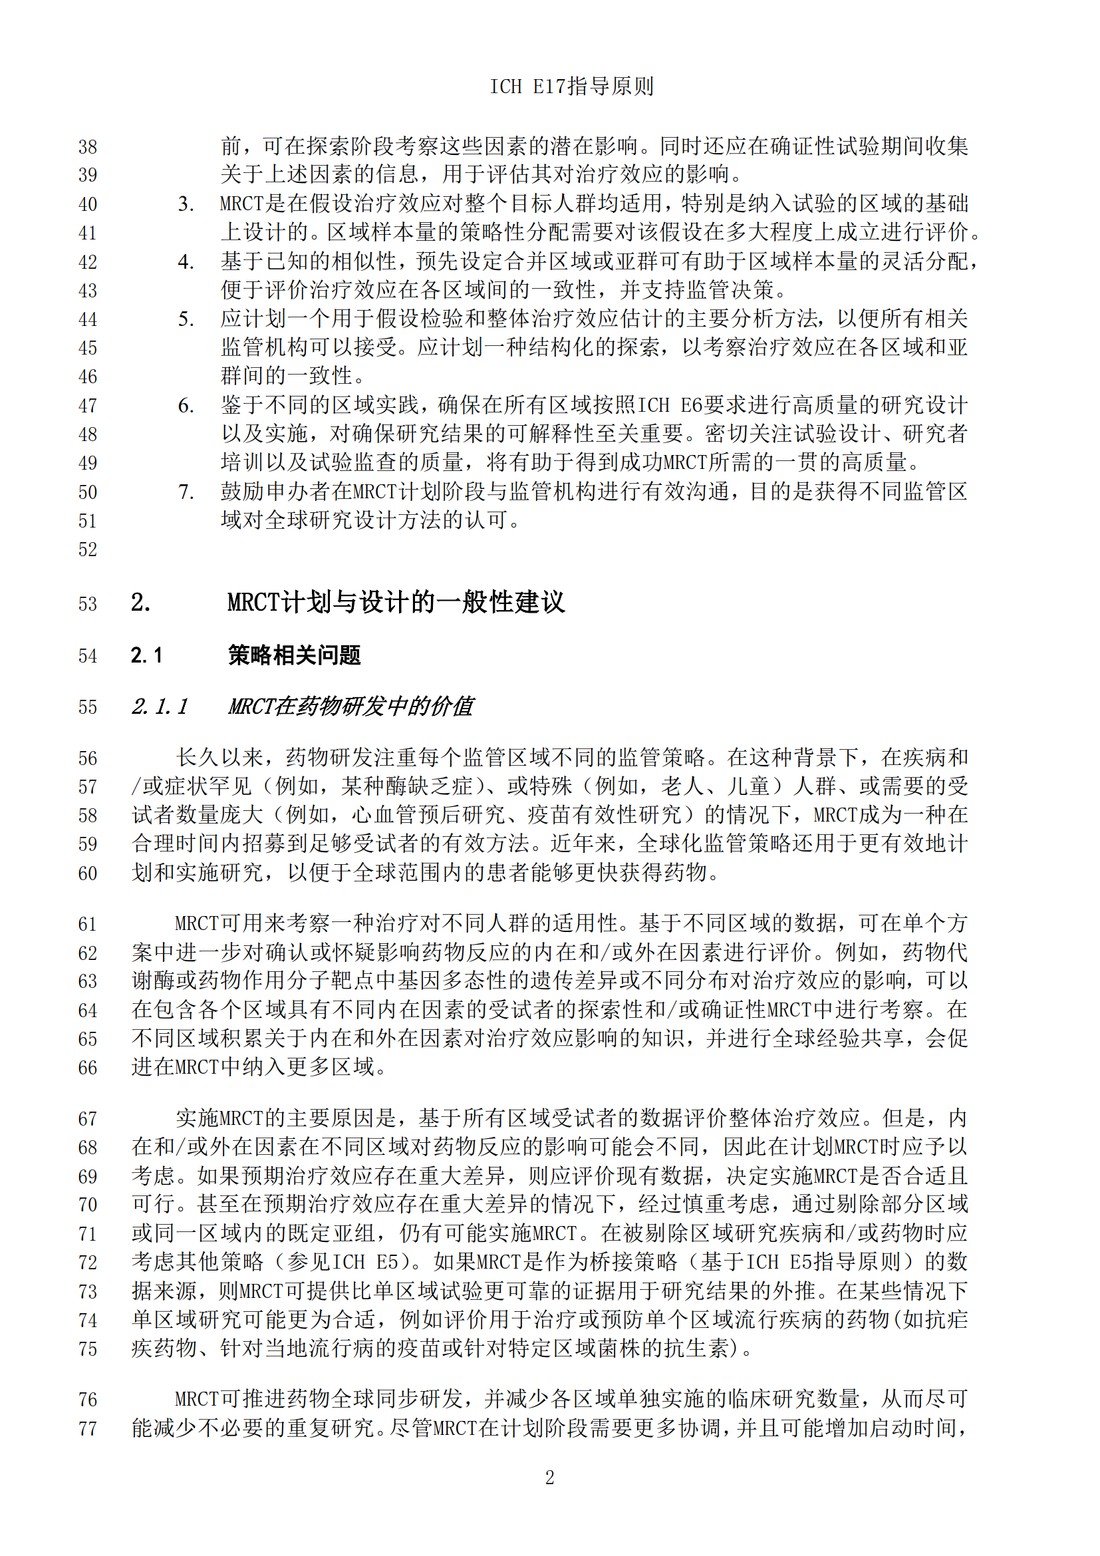 E17多区域临床试验计划与设计的一般原则（中文翻译公开征求意见稿）_05.jpg